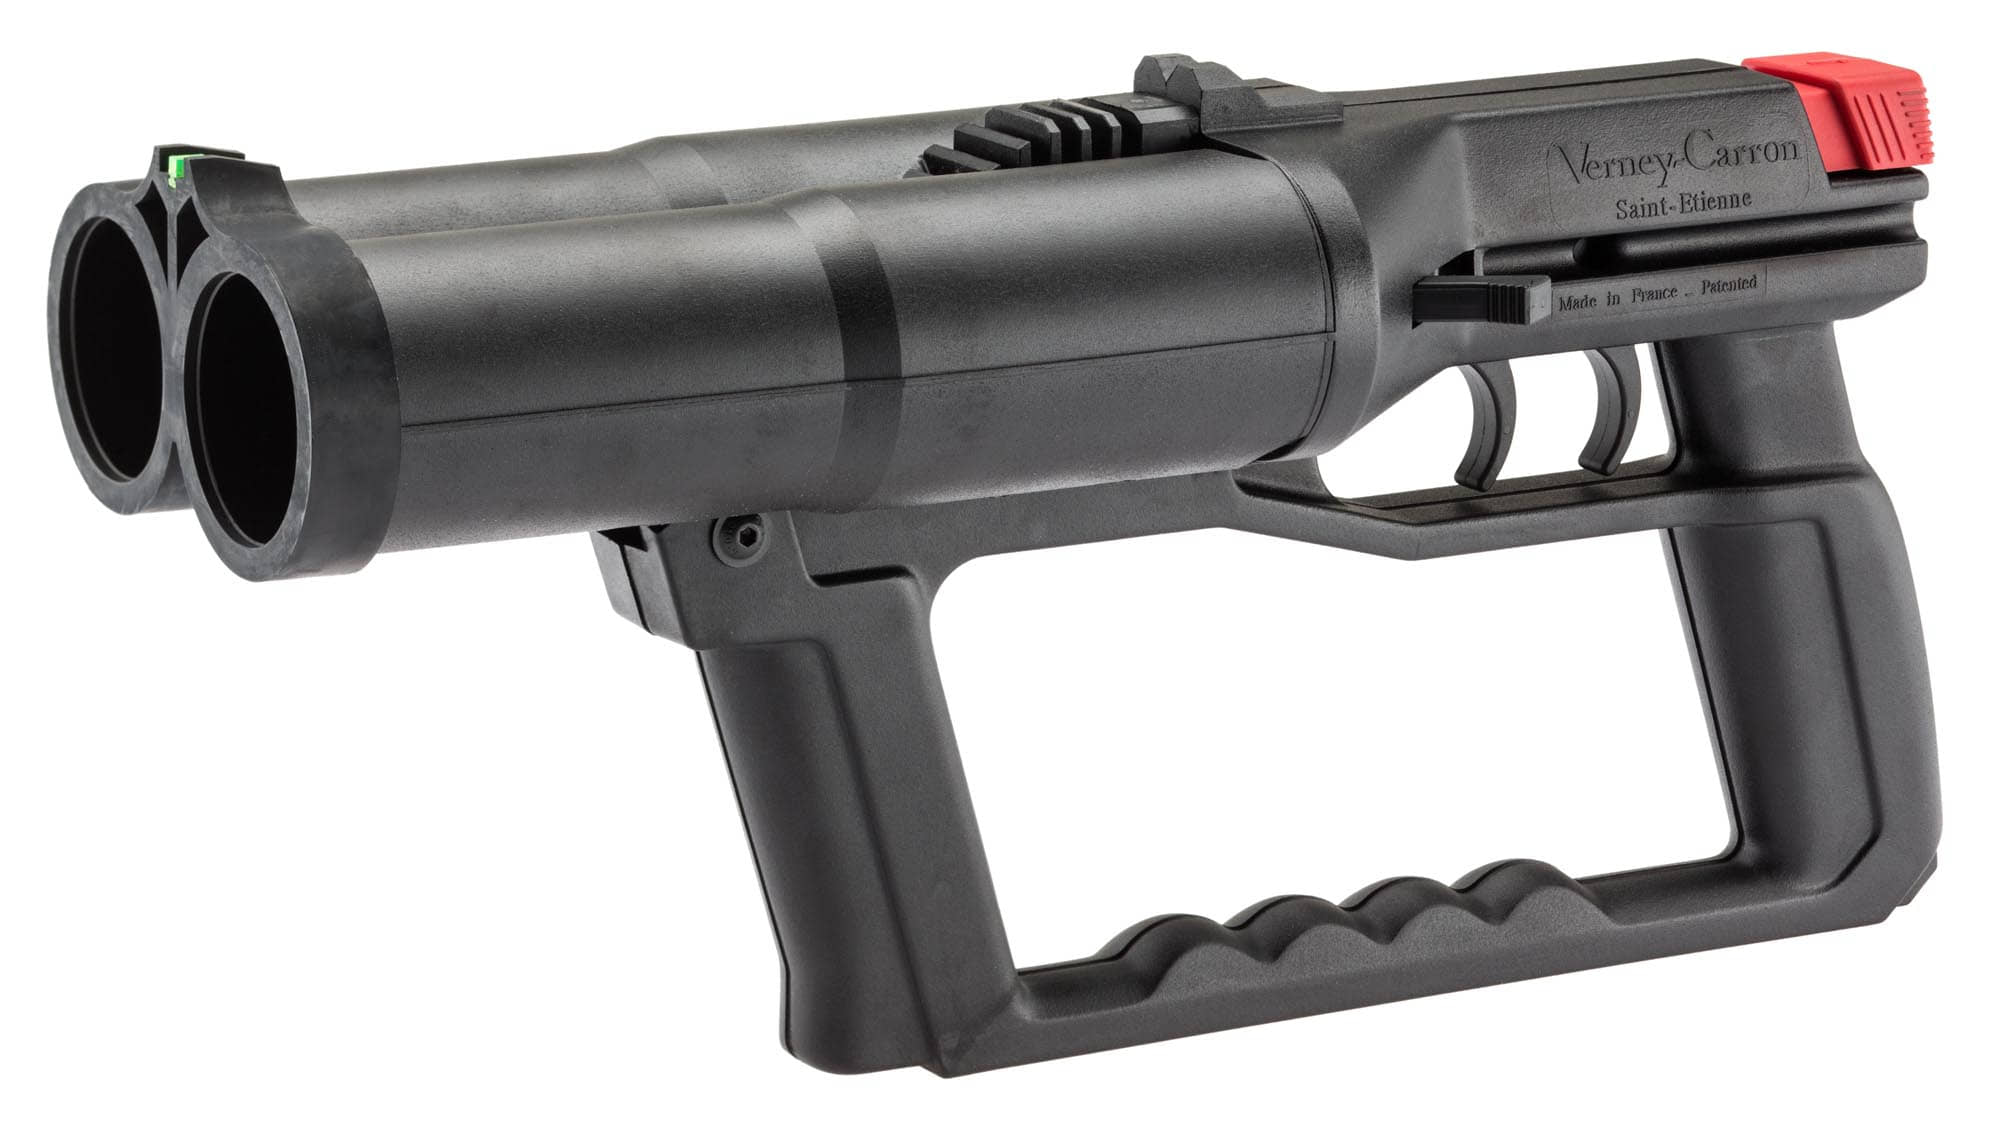 Pistolet FLASH BALL COMPACT F101 CIVIL, canons juxtaposé…